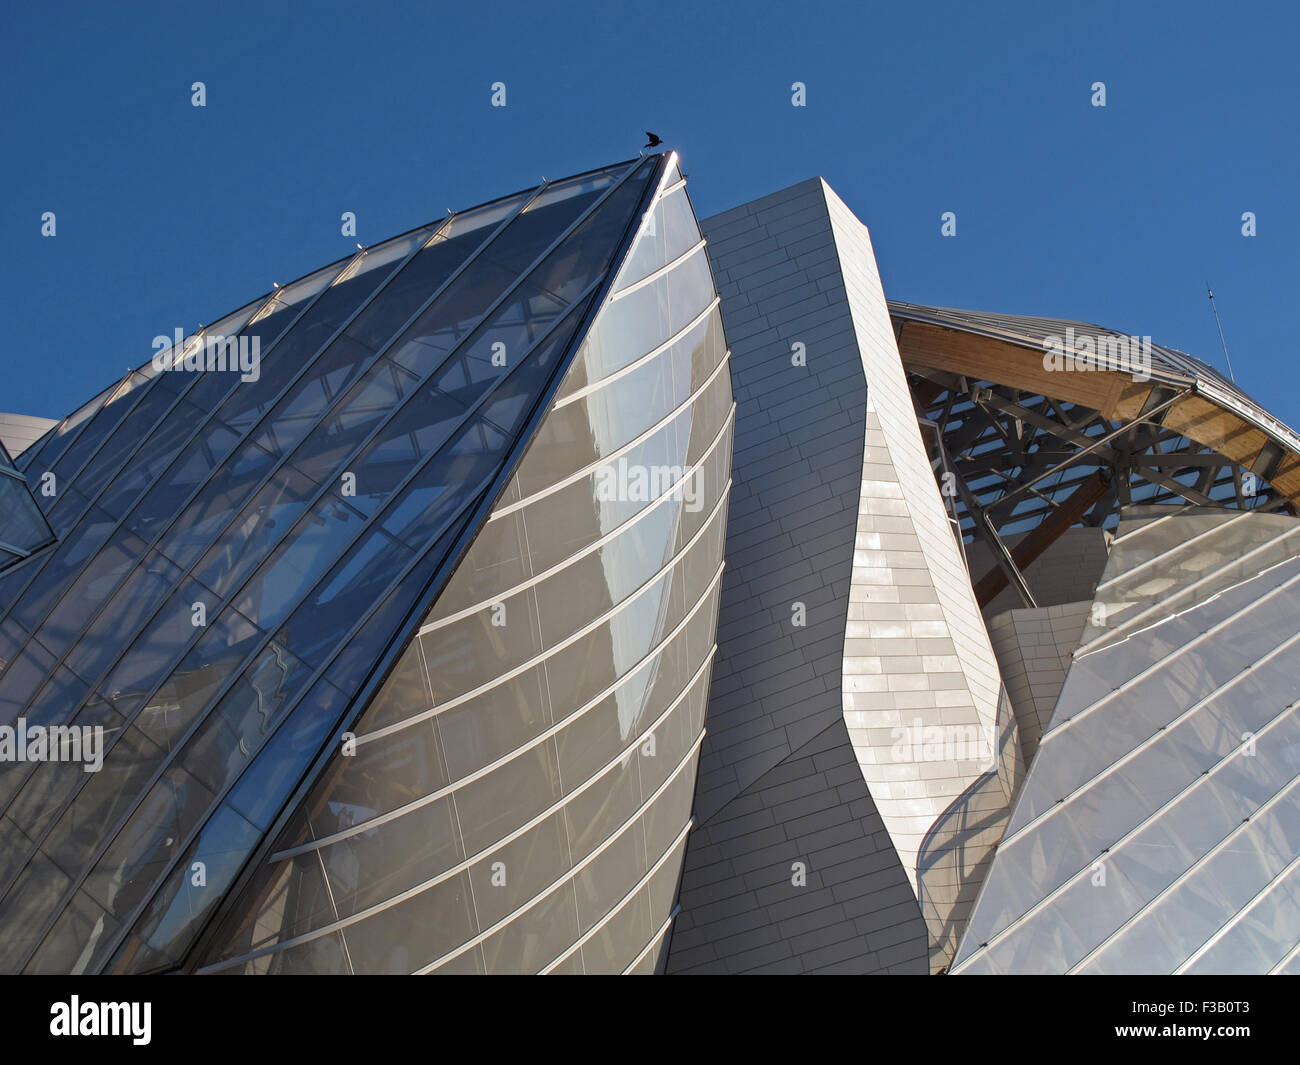 Fondation Louis Vuitton,Frank Gehry architect,Museum of contemporary art,Bois de Boulogne,Paris,France Stock Photo